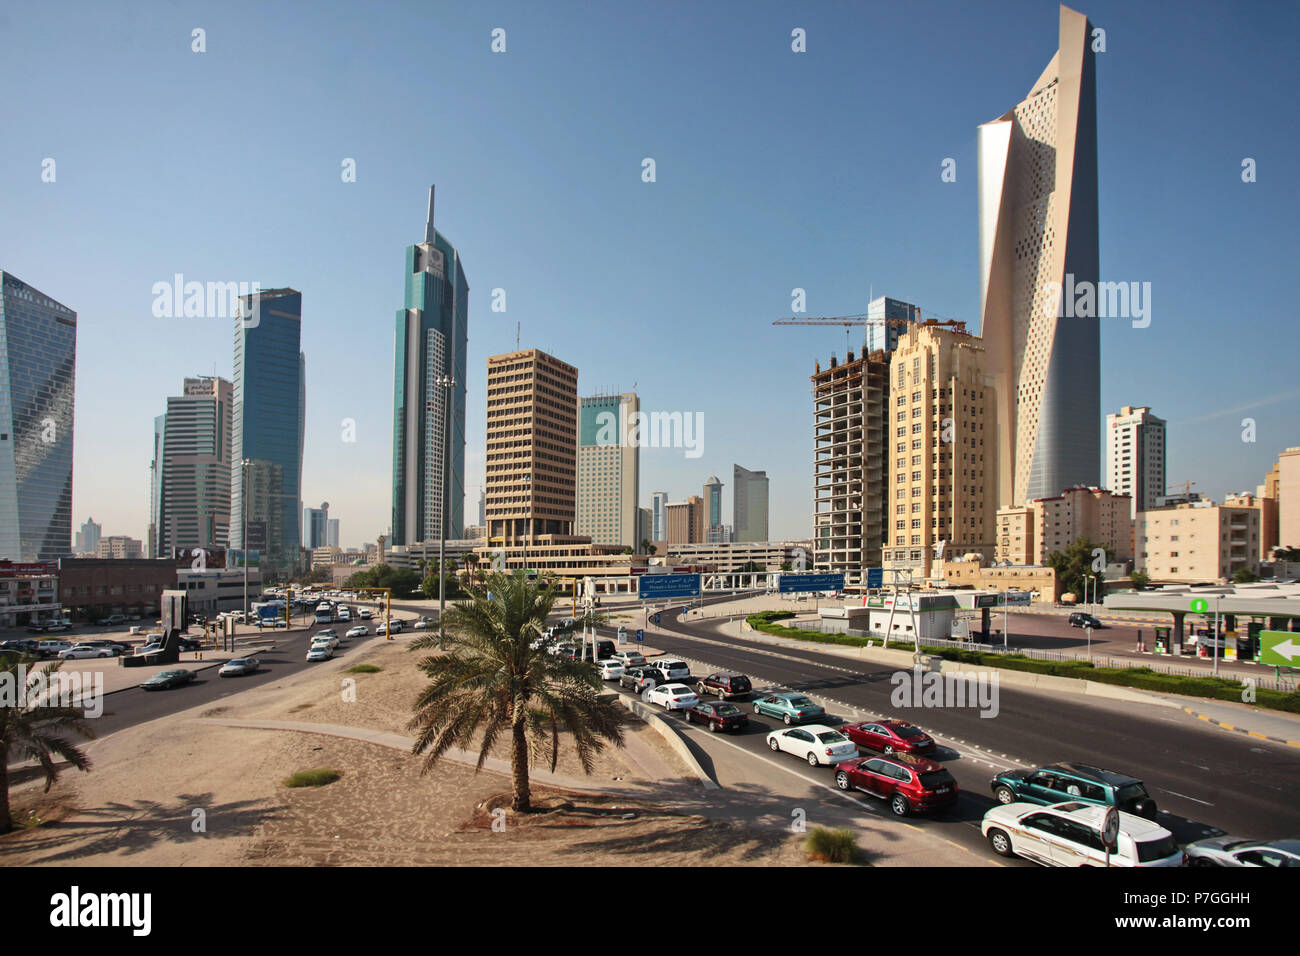 KUWAIT CITY, KUWAIT - November 12, 2013:  Skyline of Kuwait City, Middle East Stock Photo